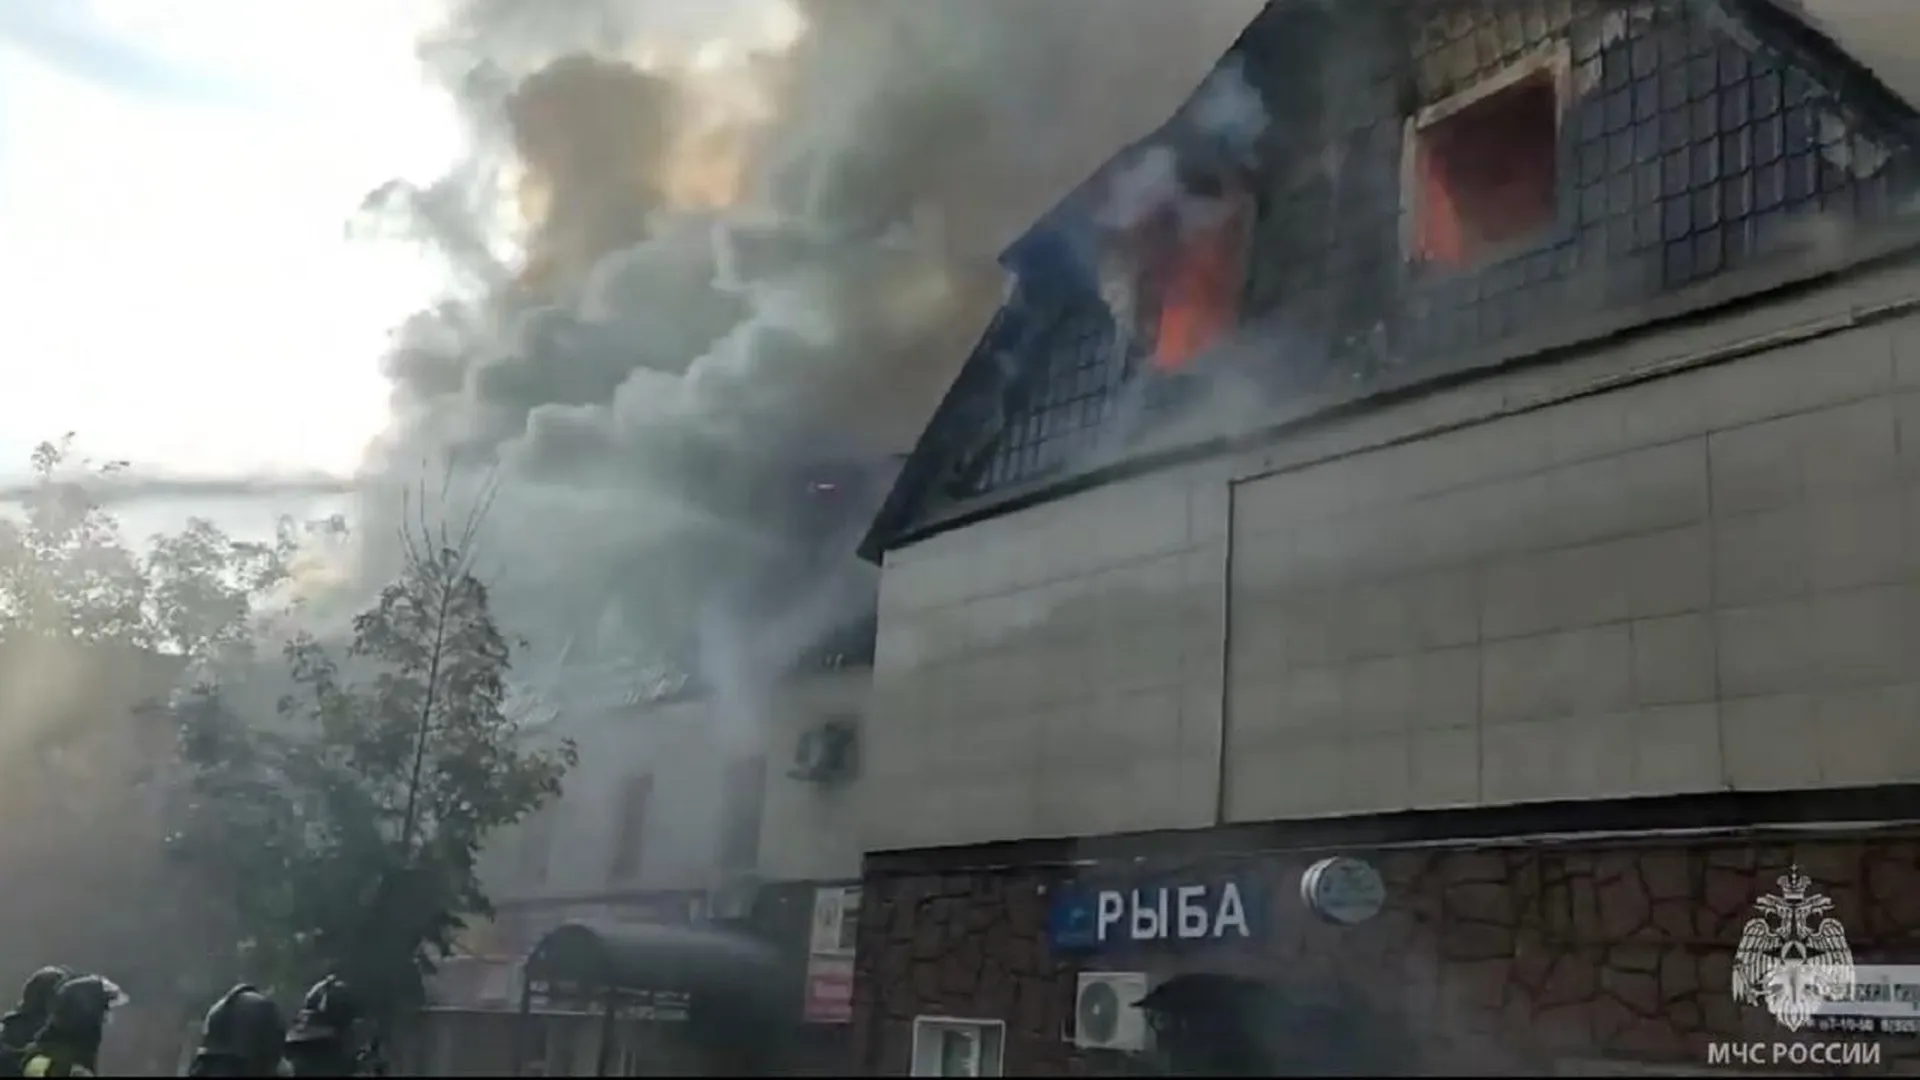 Площадь пожара в офисном здании в Щелково увеличилась до двух тысяч «квадратов»